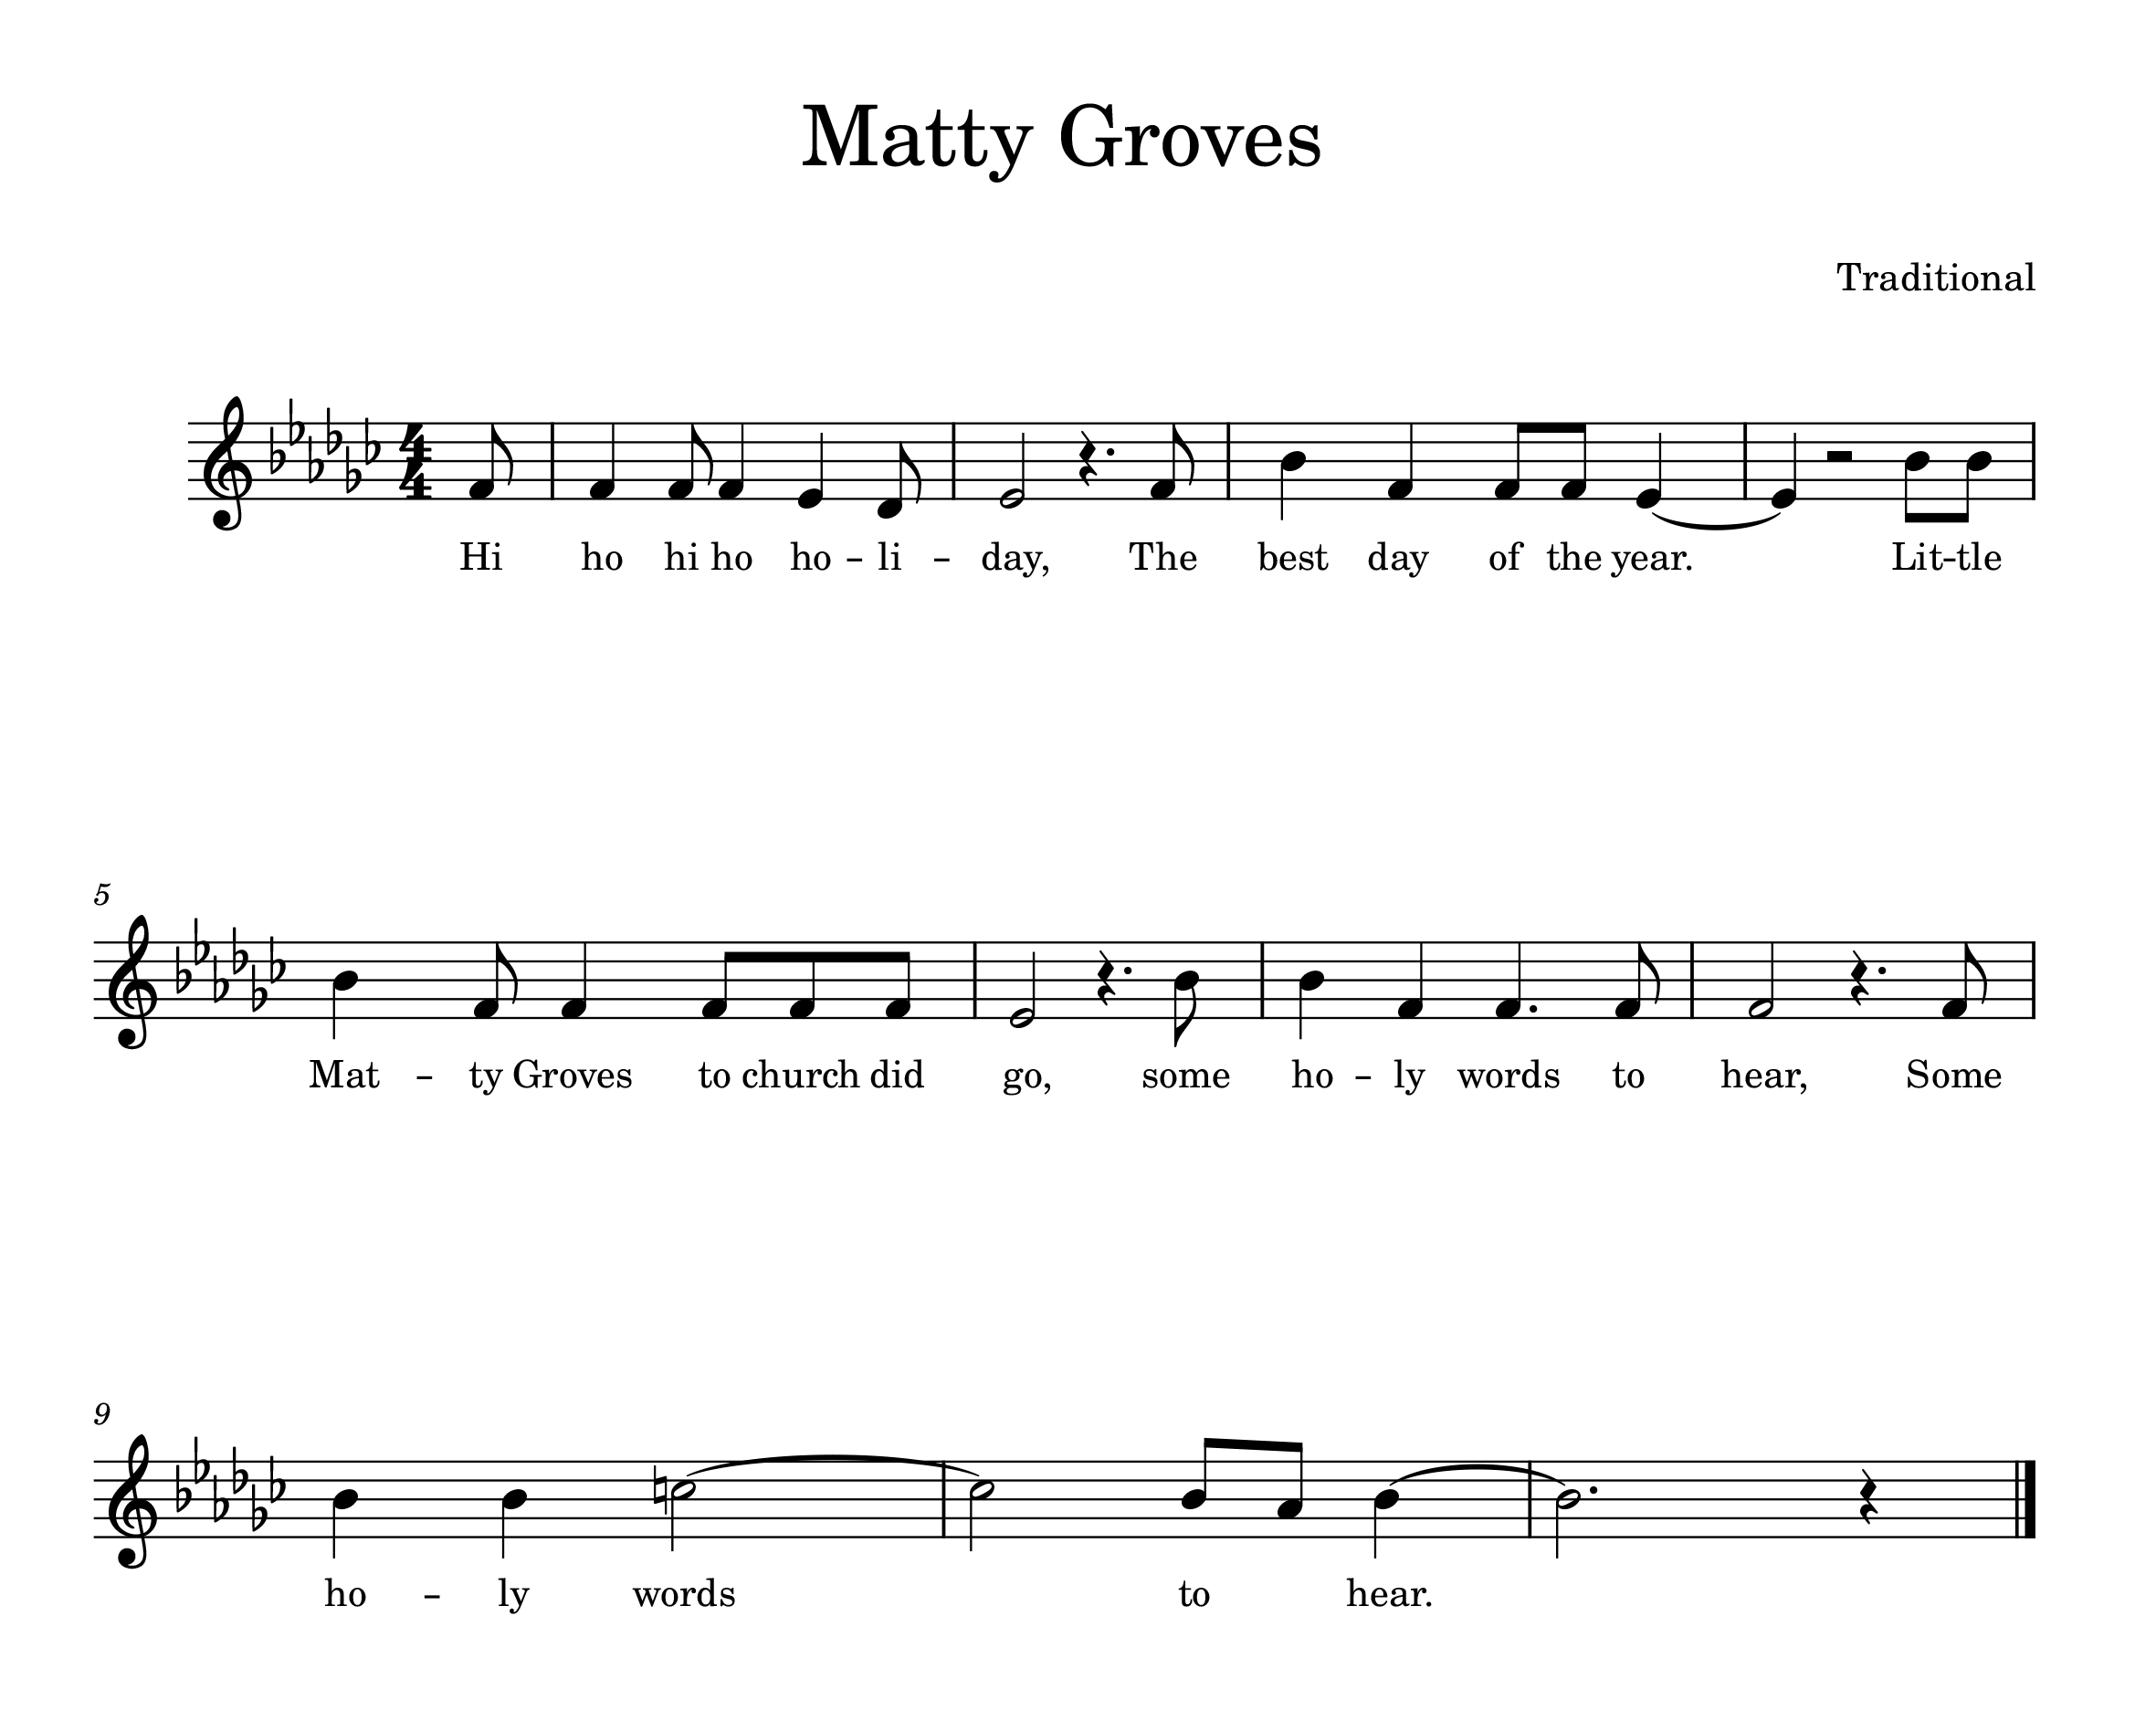 Sheet music for "Matty Groves"